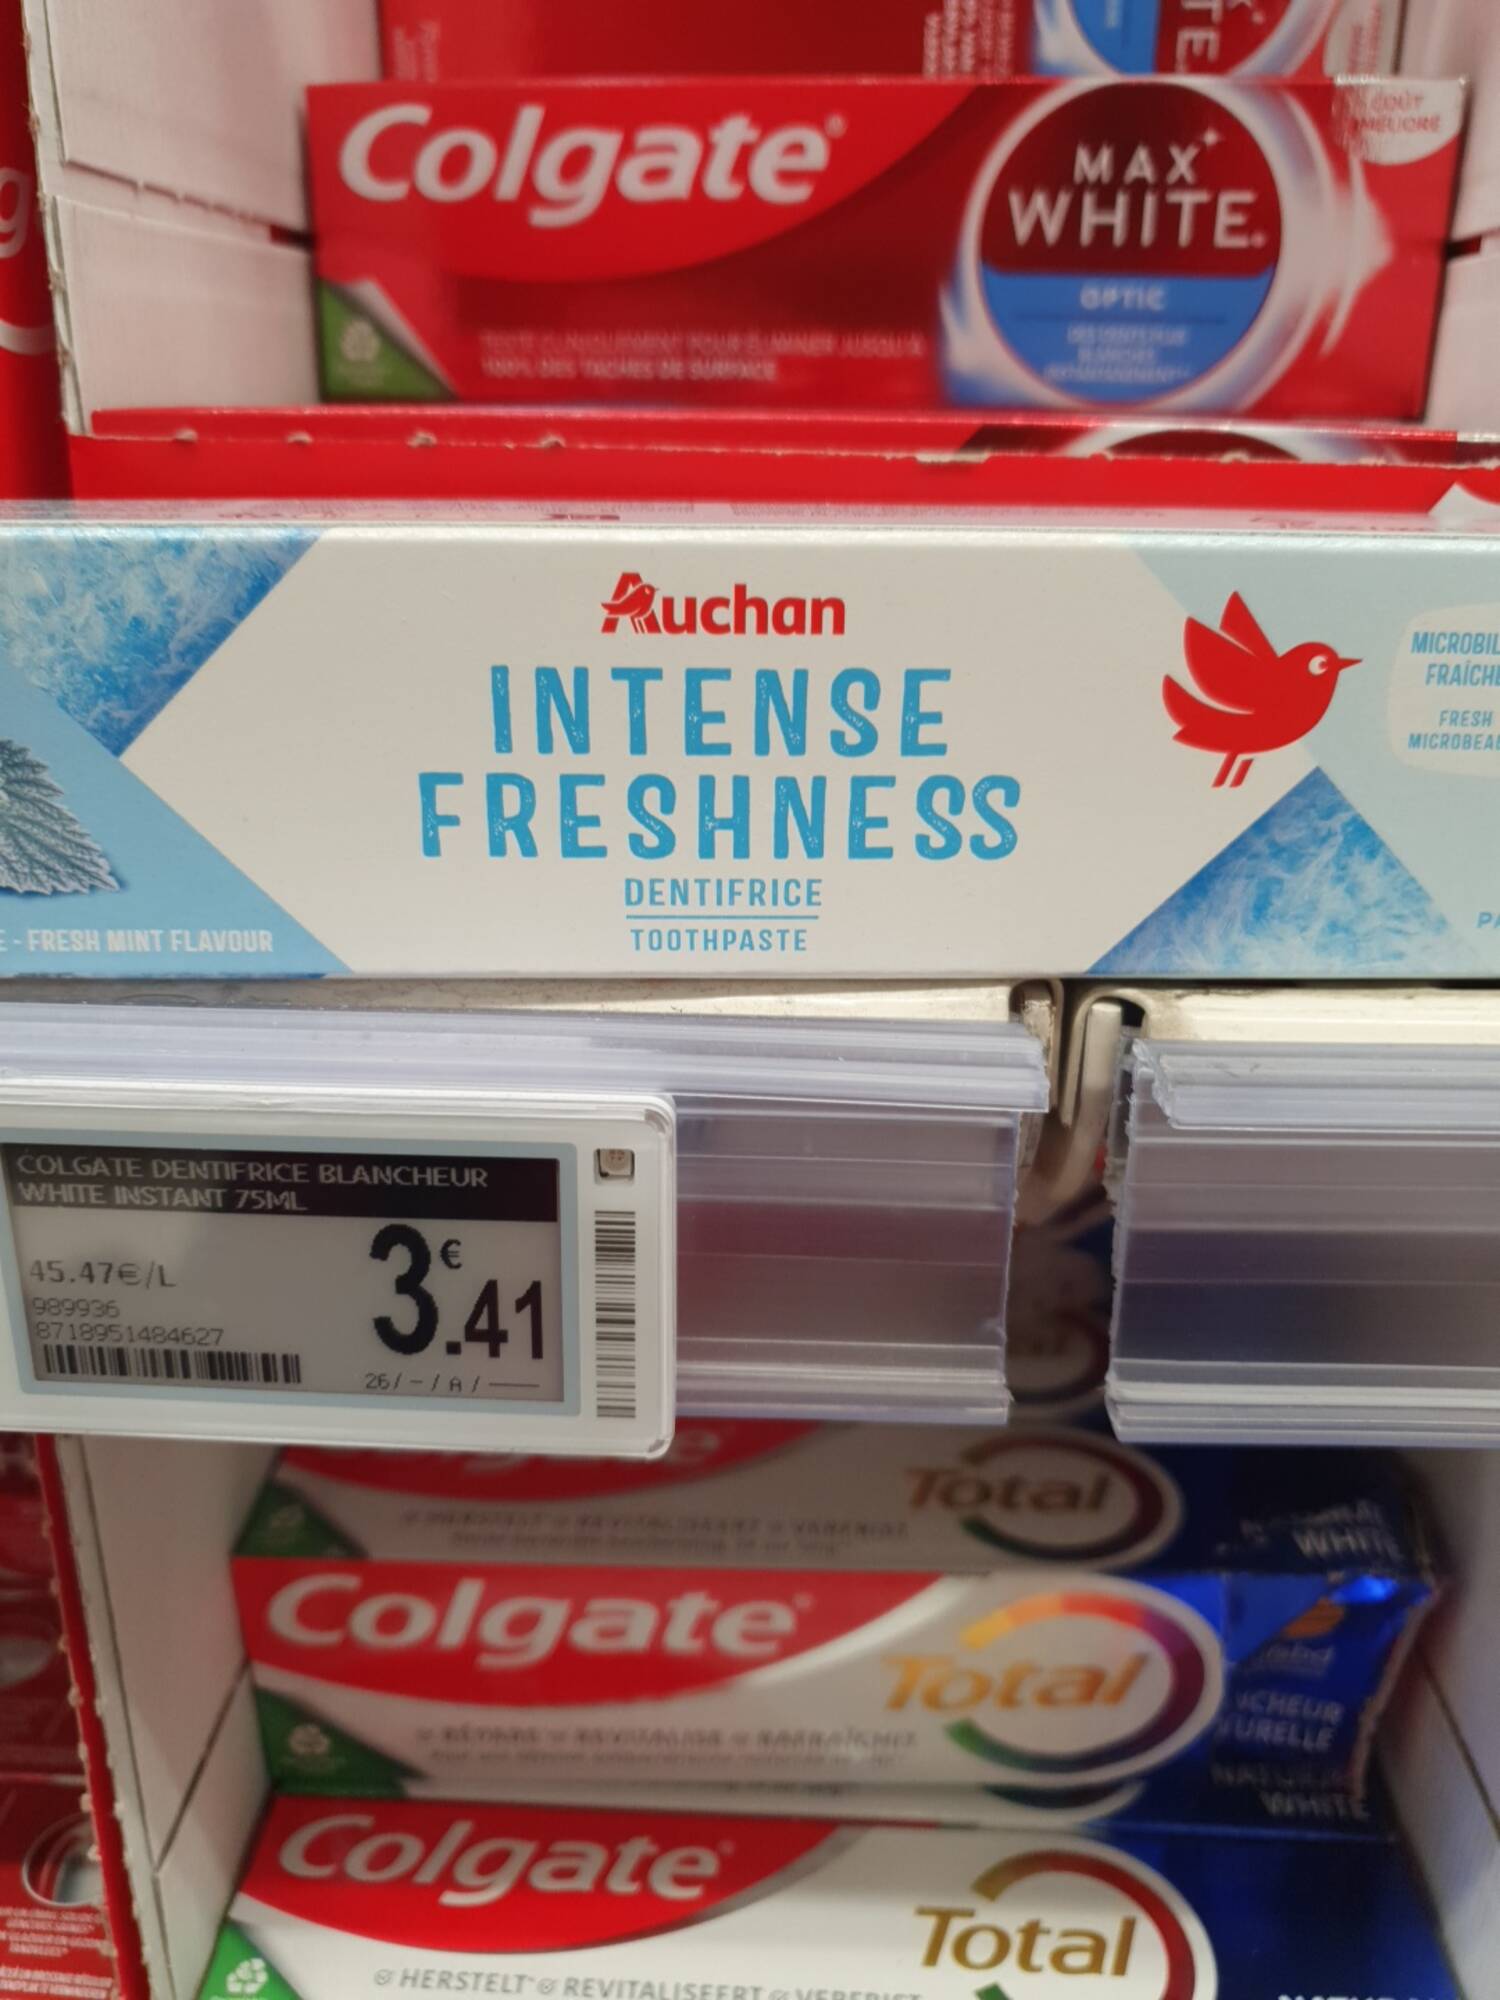 AUCHAN - Intense freshness - Dentifrice